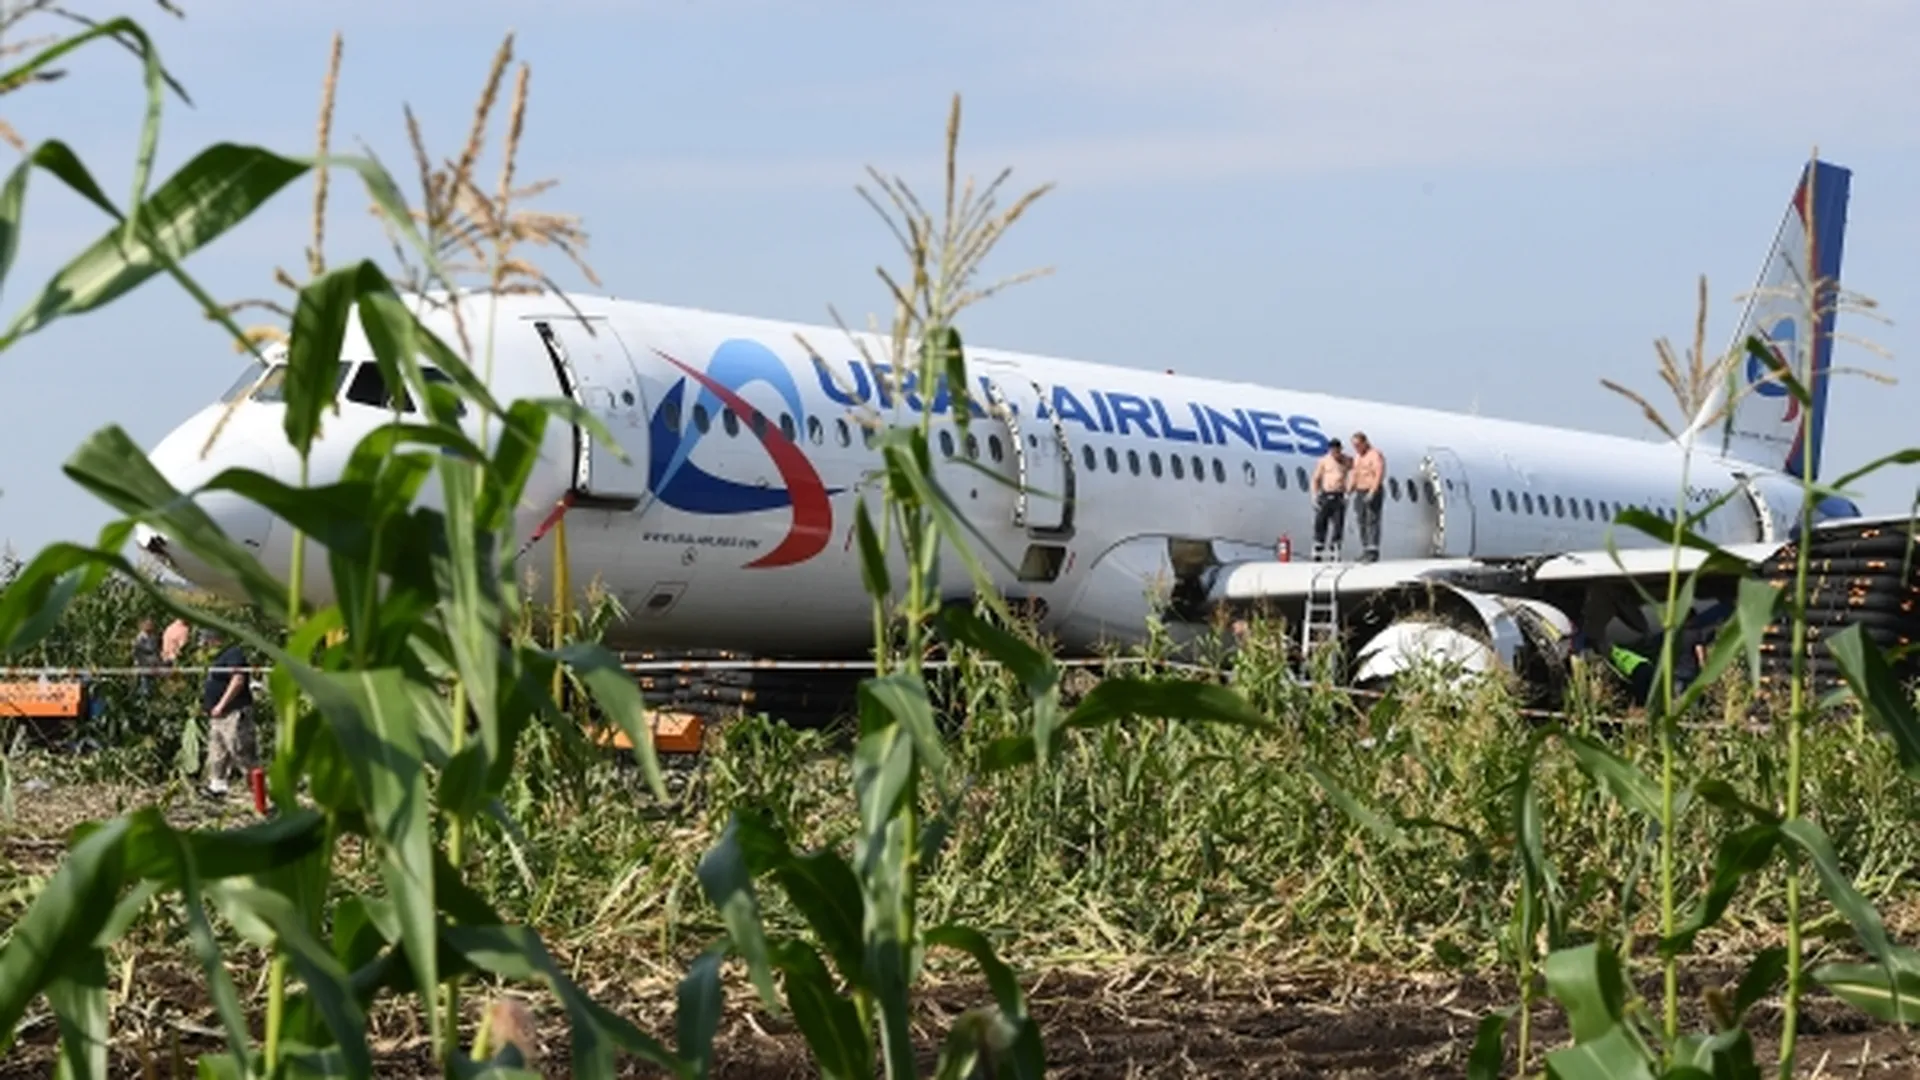 «Идем правее, на солнце, вдоль рядов кукурузы». Как родилась крылатая фраза с самолета Airbus A321?